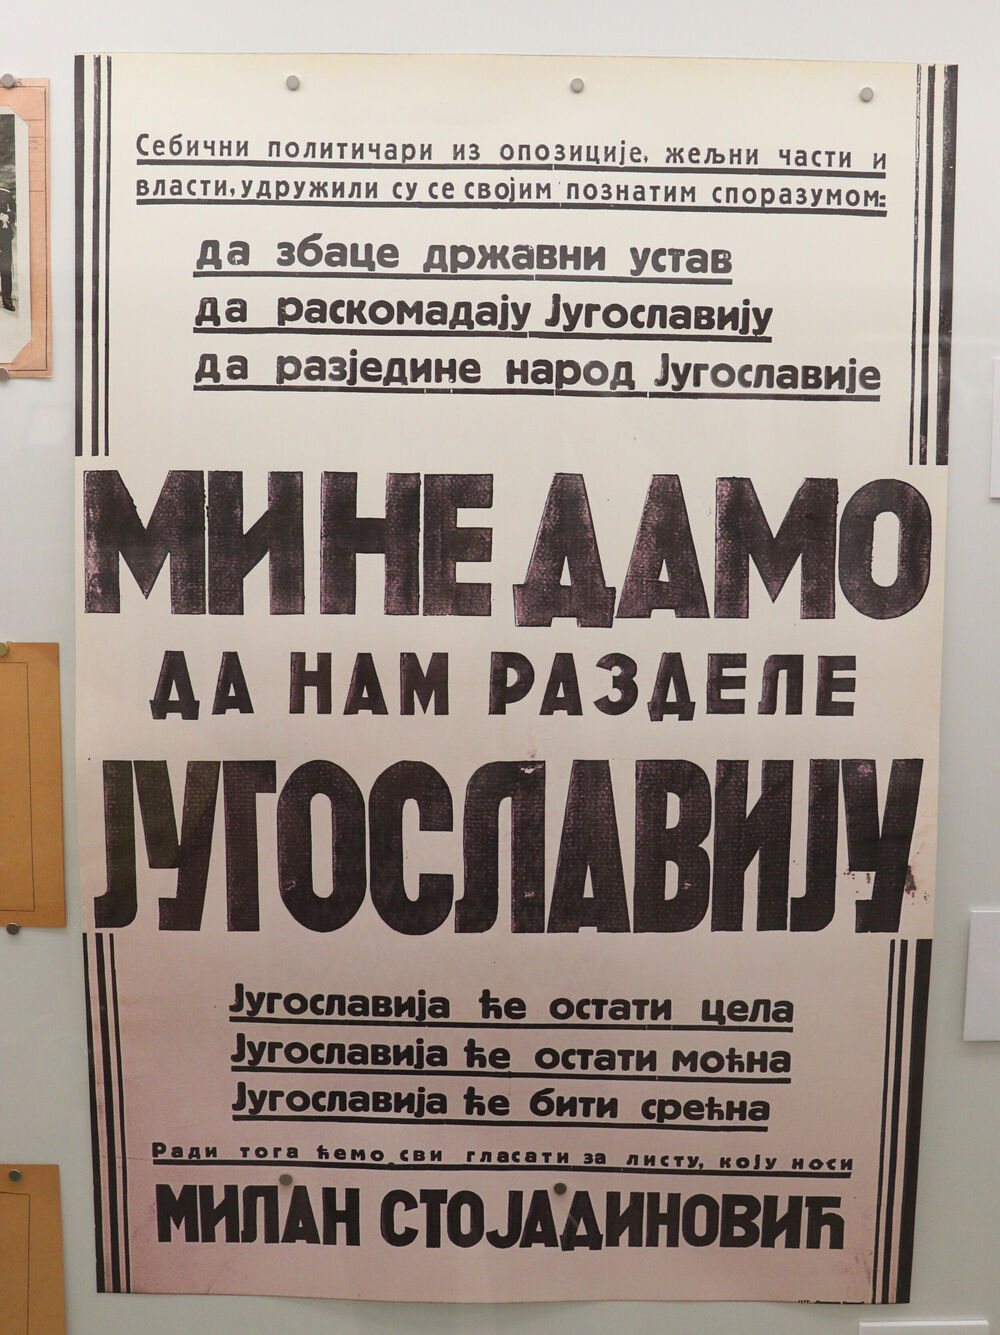 Plakat izložen u Muzeju Jugoslavije